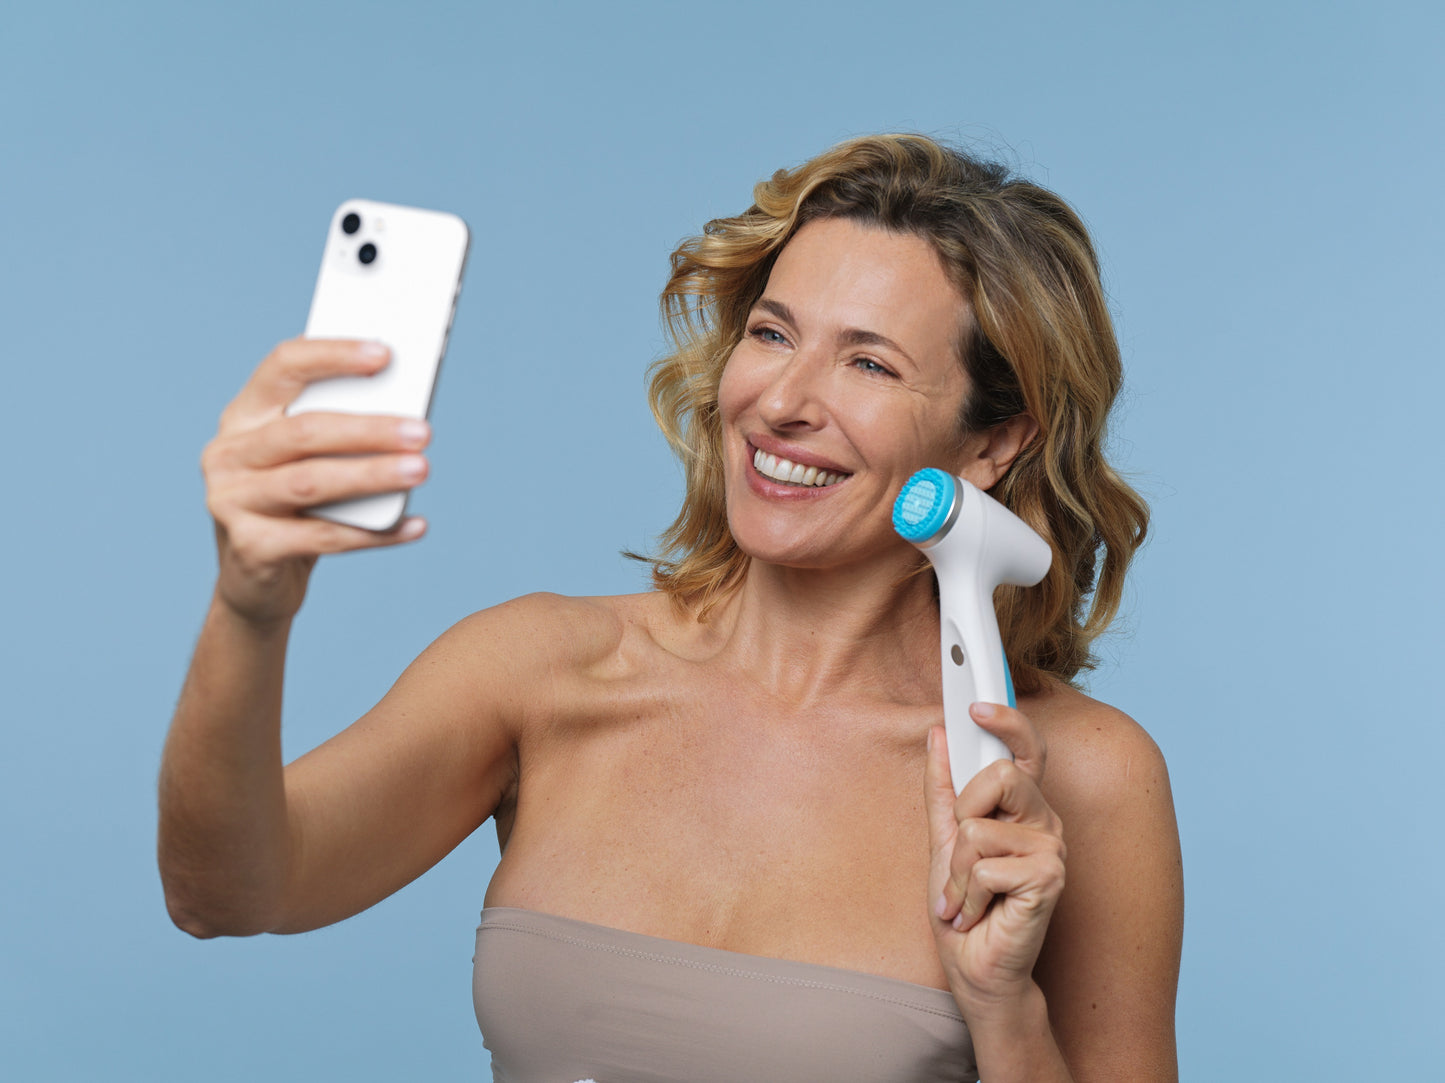 El cliente retiene LumiSpa iO y teléfono móvil - LumiSpa iO puede utilizar Blutetooth con el Nu Skin aplicación Vera en su teléfono móvil para ayudarle a alcanzar sus objetivos de cuidado de la piel con un sistema inteligente. IoT-tecnología inteligente (Internet de las Cosas).